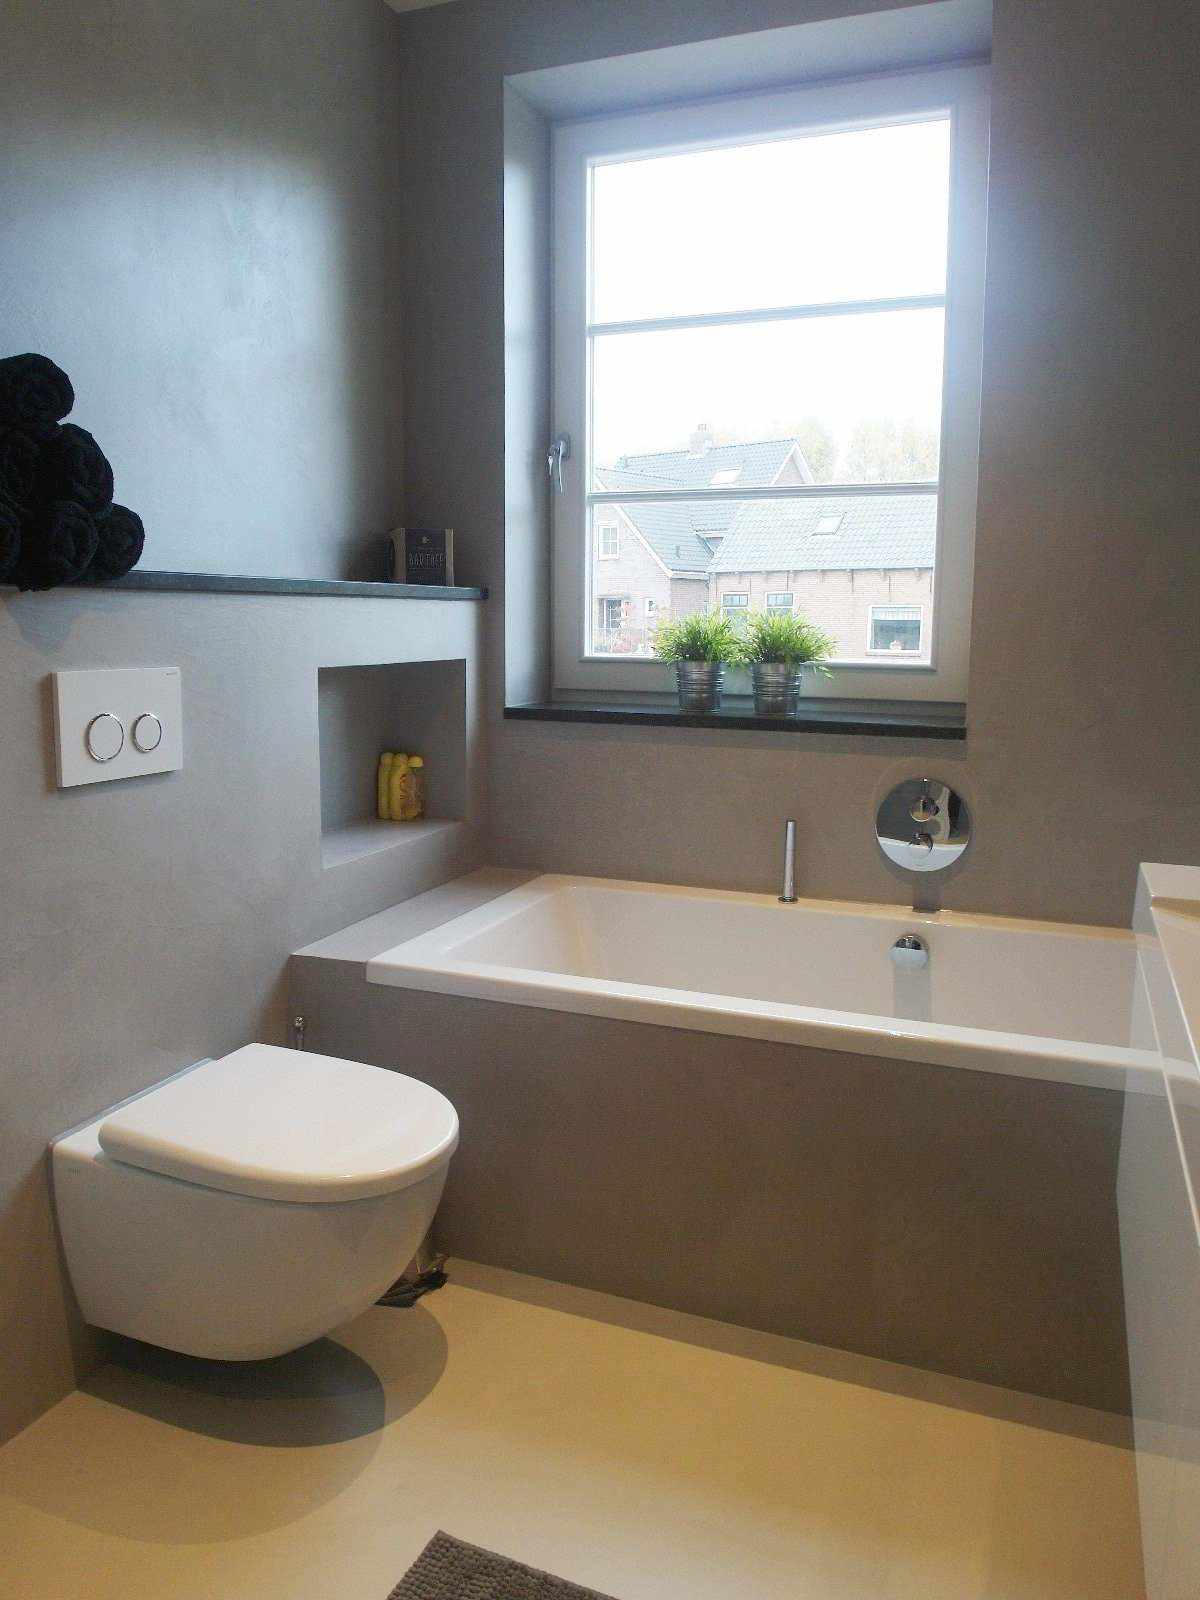 Microciment gris sur le mur et le meuble d'une salle de bain en Hollande dans le projet Decas.